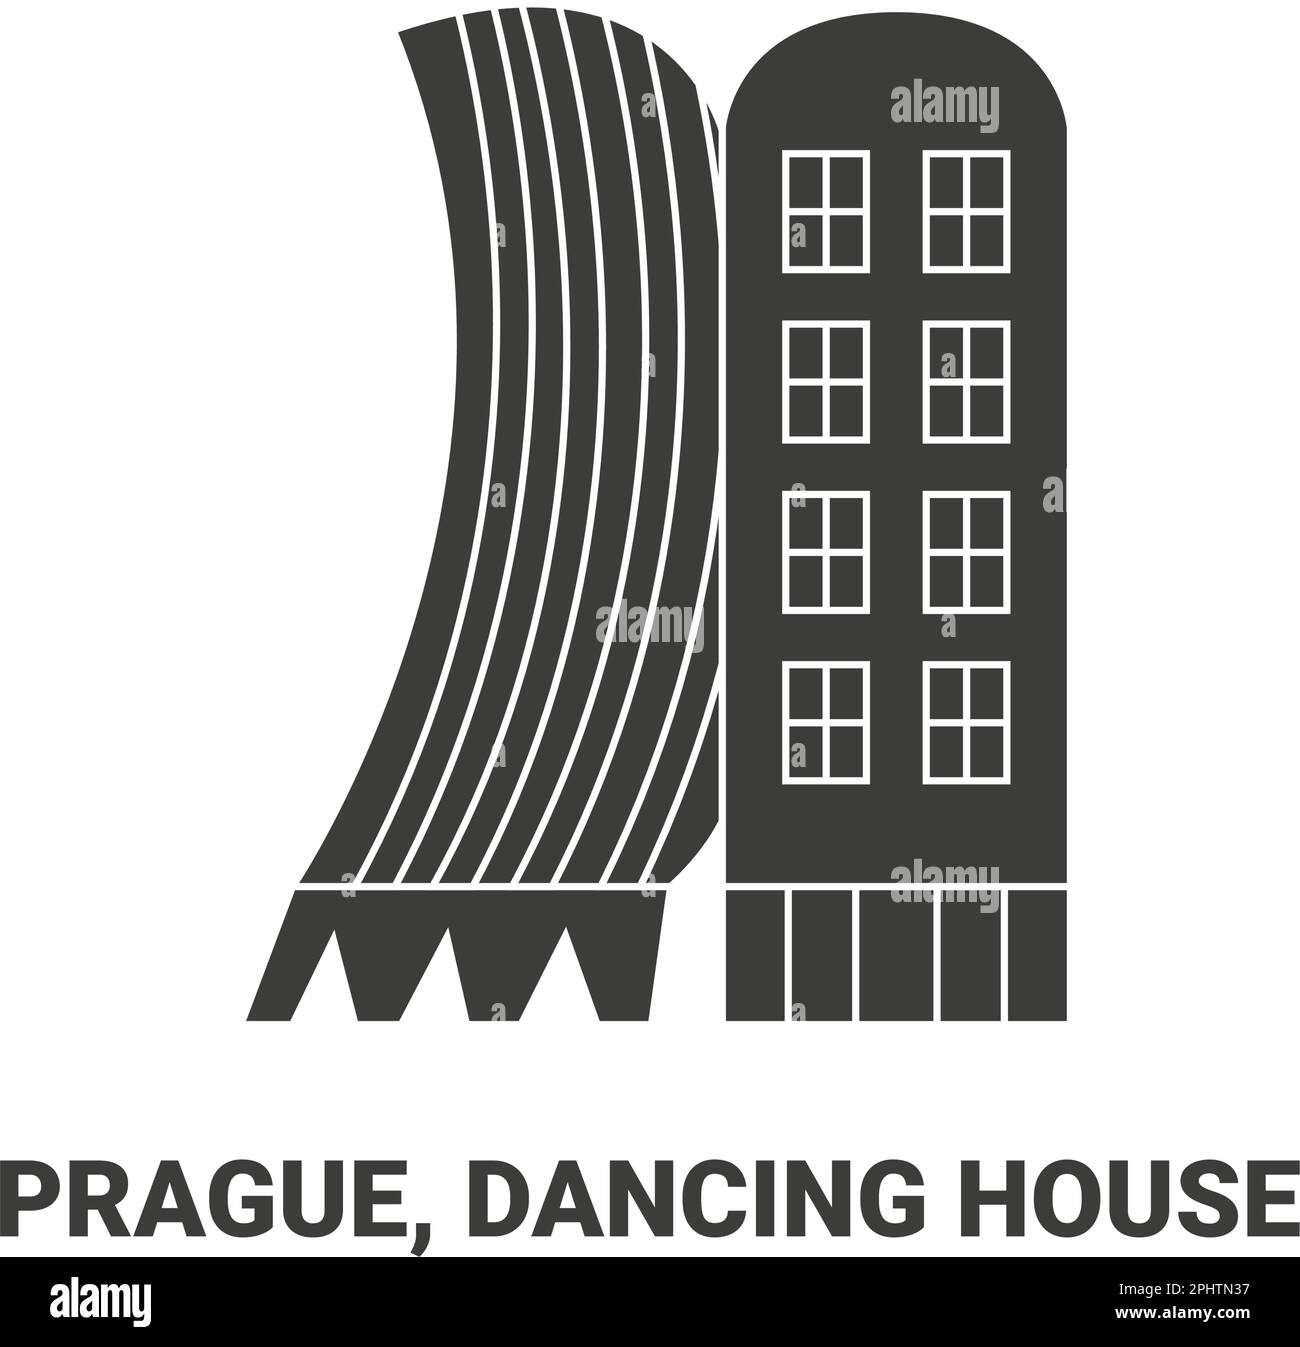 Tschechische Republik, Prag, Tanzendes Haus, Reise-Wahrzeichen-Vektor-Illustration Stock Vektor